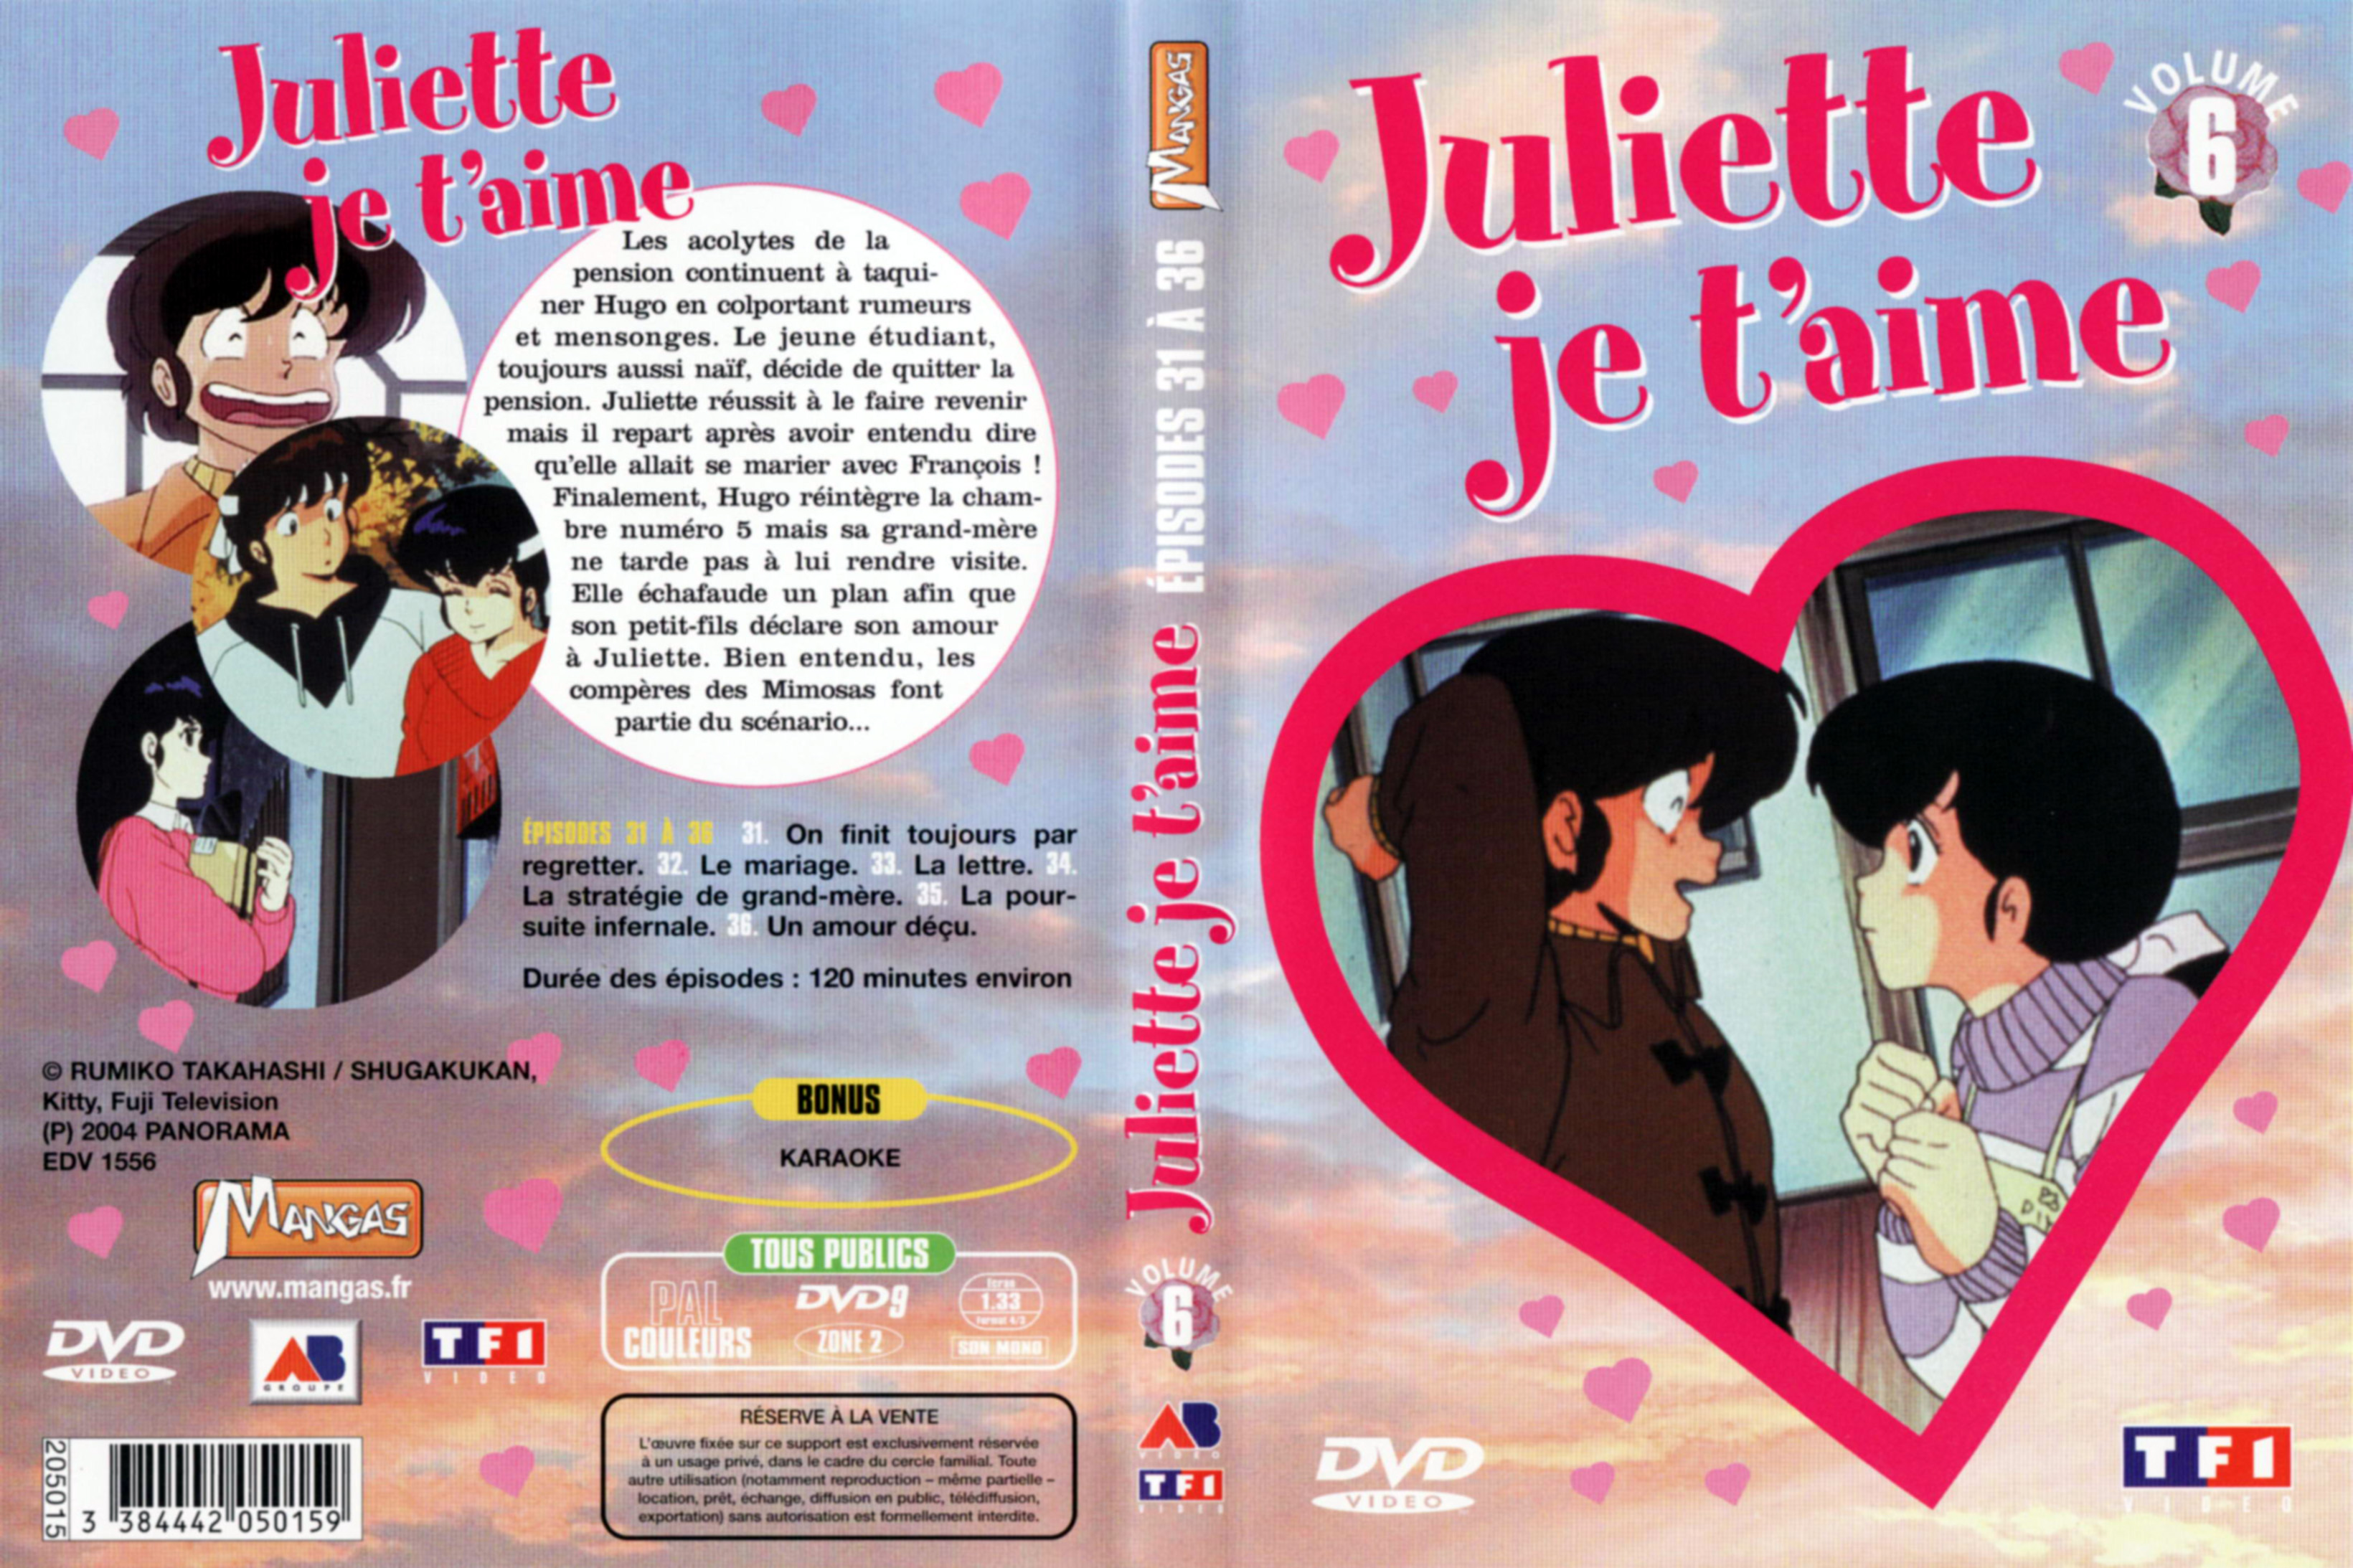 Jaquette DVD Juliette je t aime vol 06